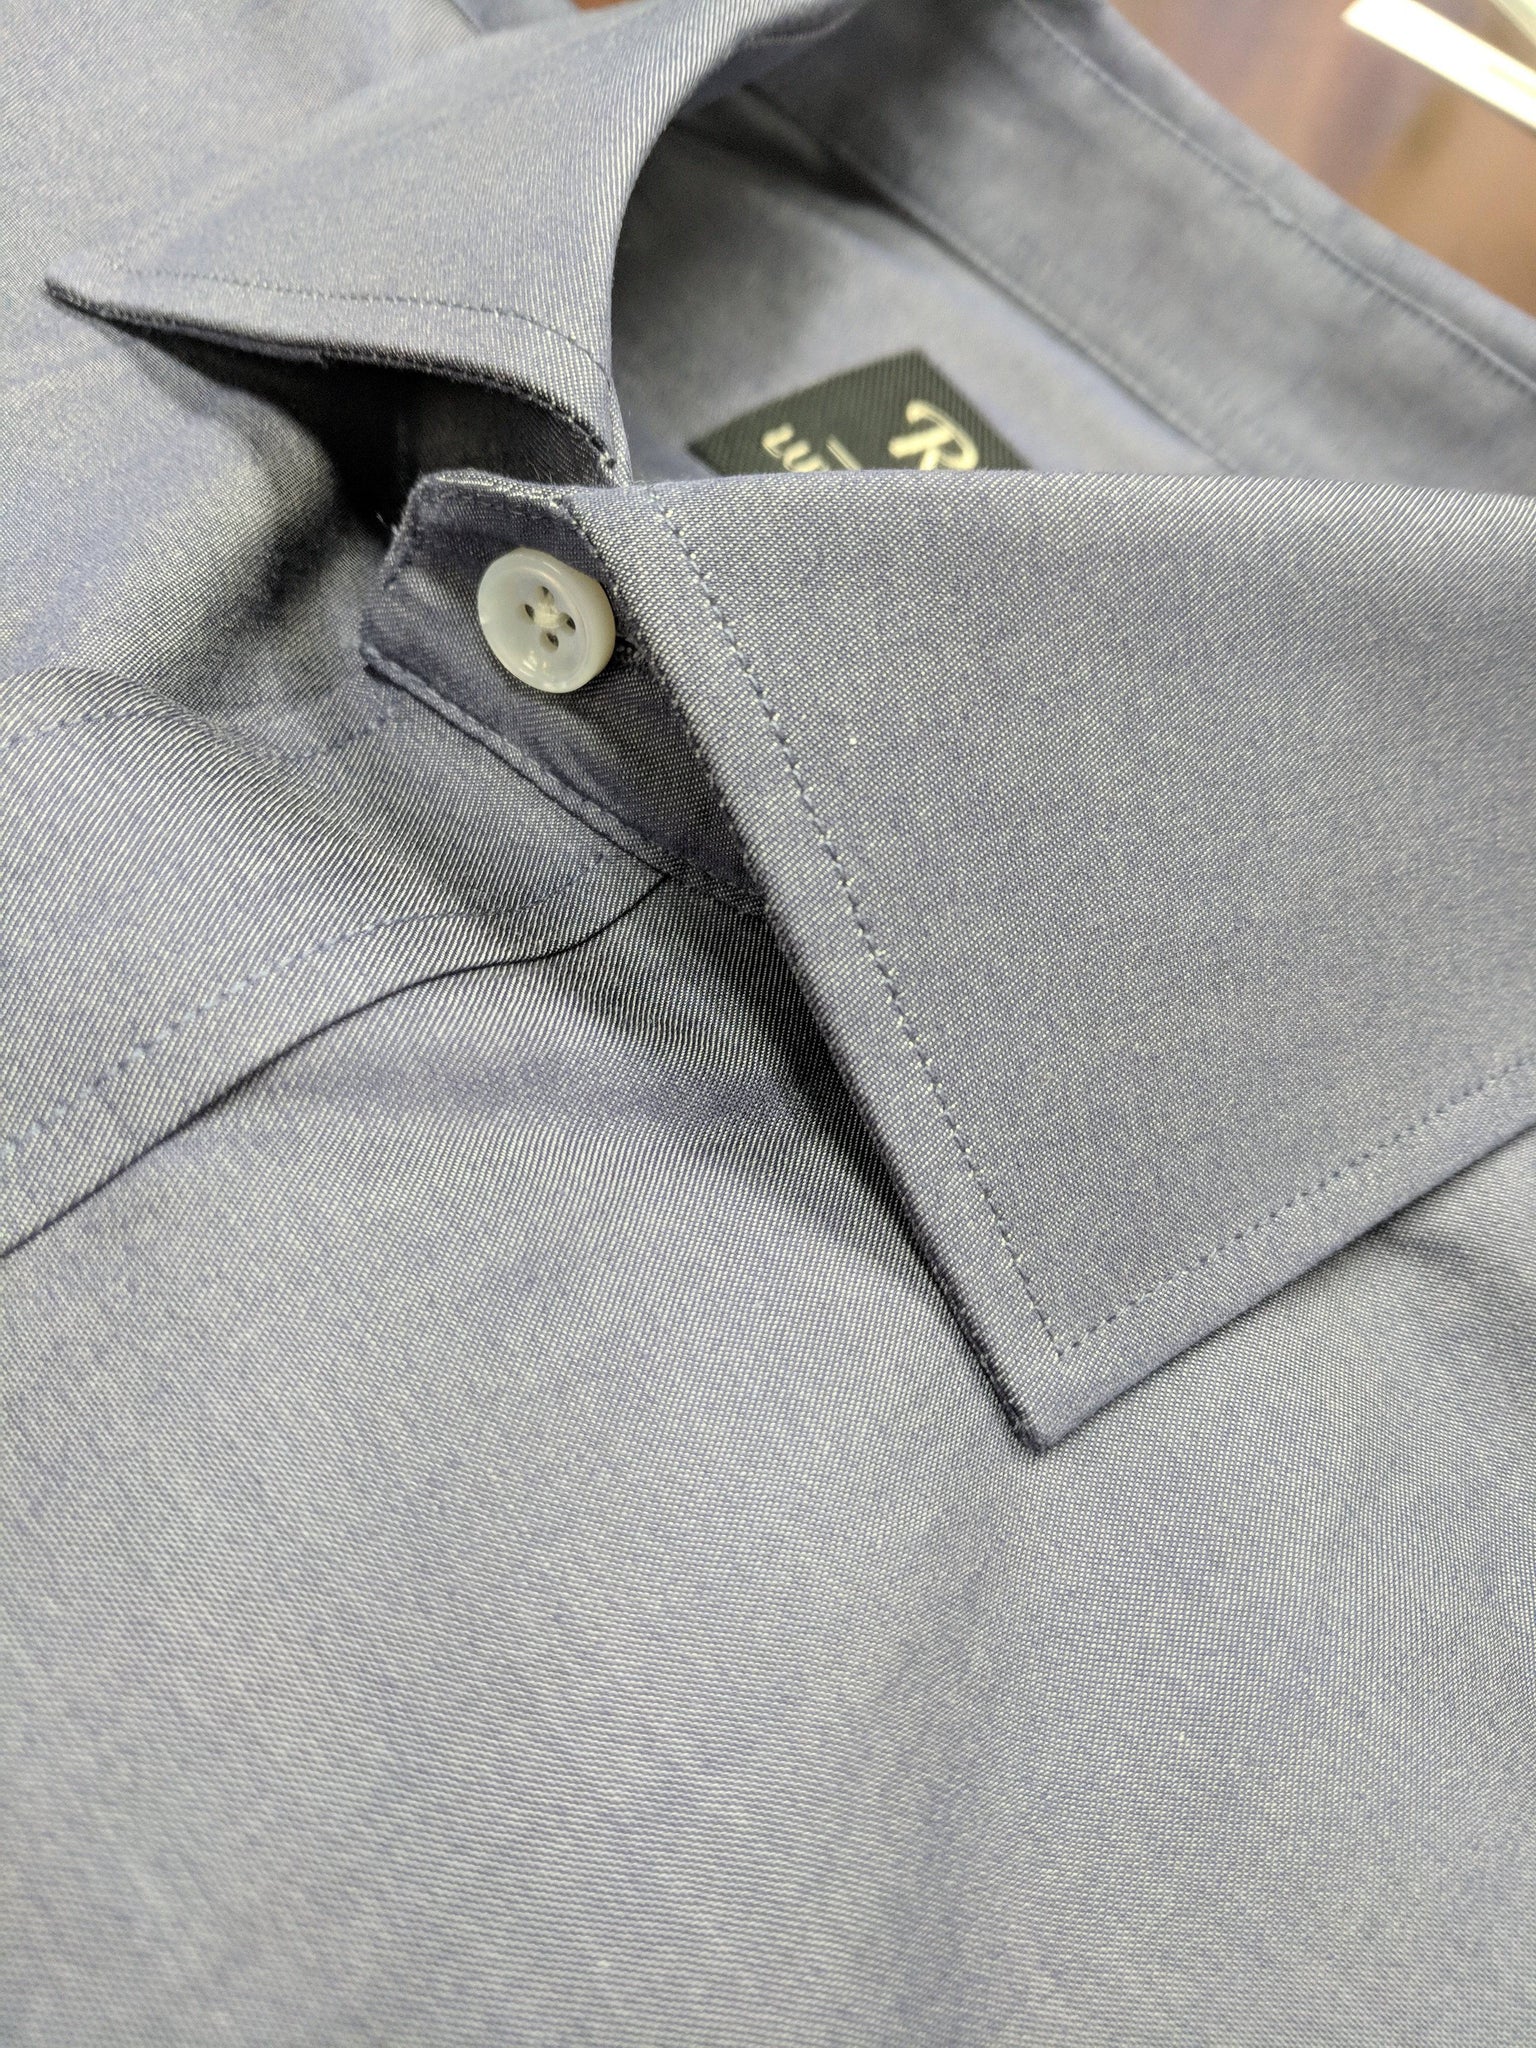 Rainwater's 100% Cotton Denim Chambray Dress Shirt - Rainwater's Men's Clothing and Tuxedo Rental